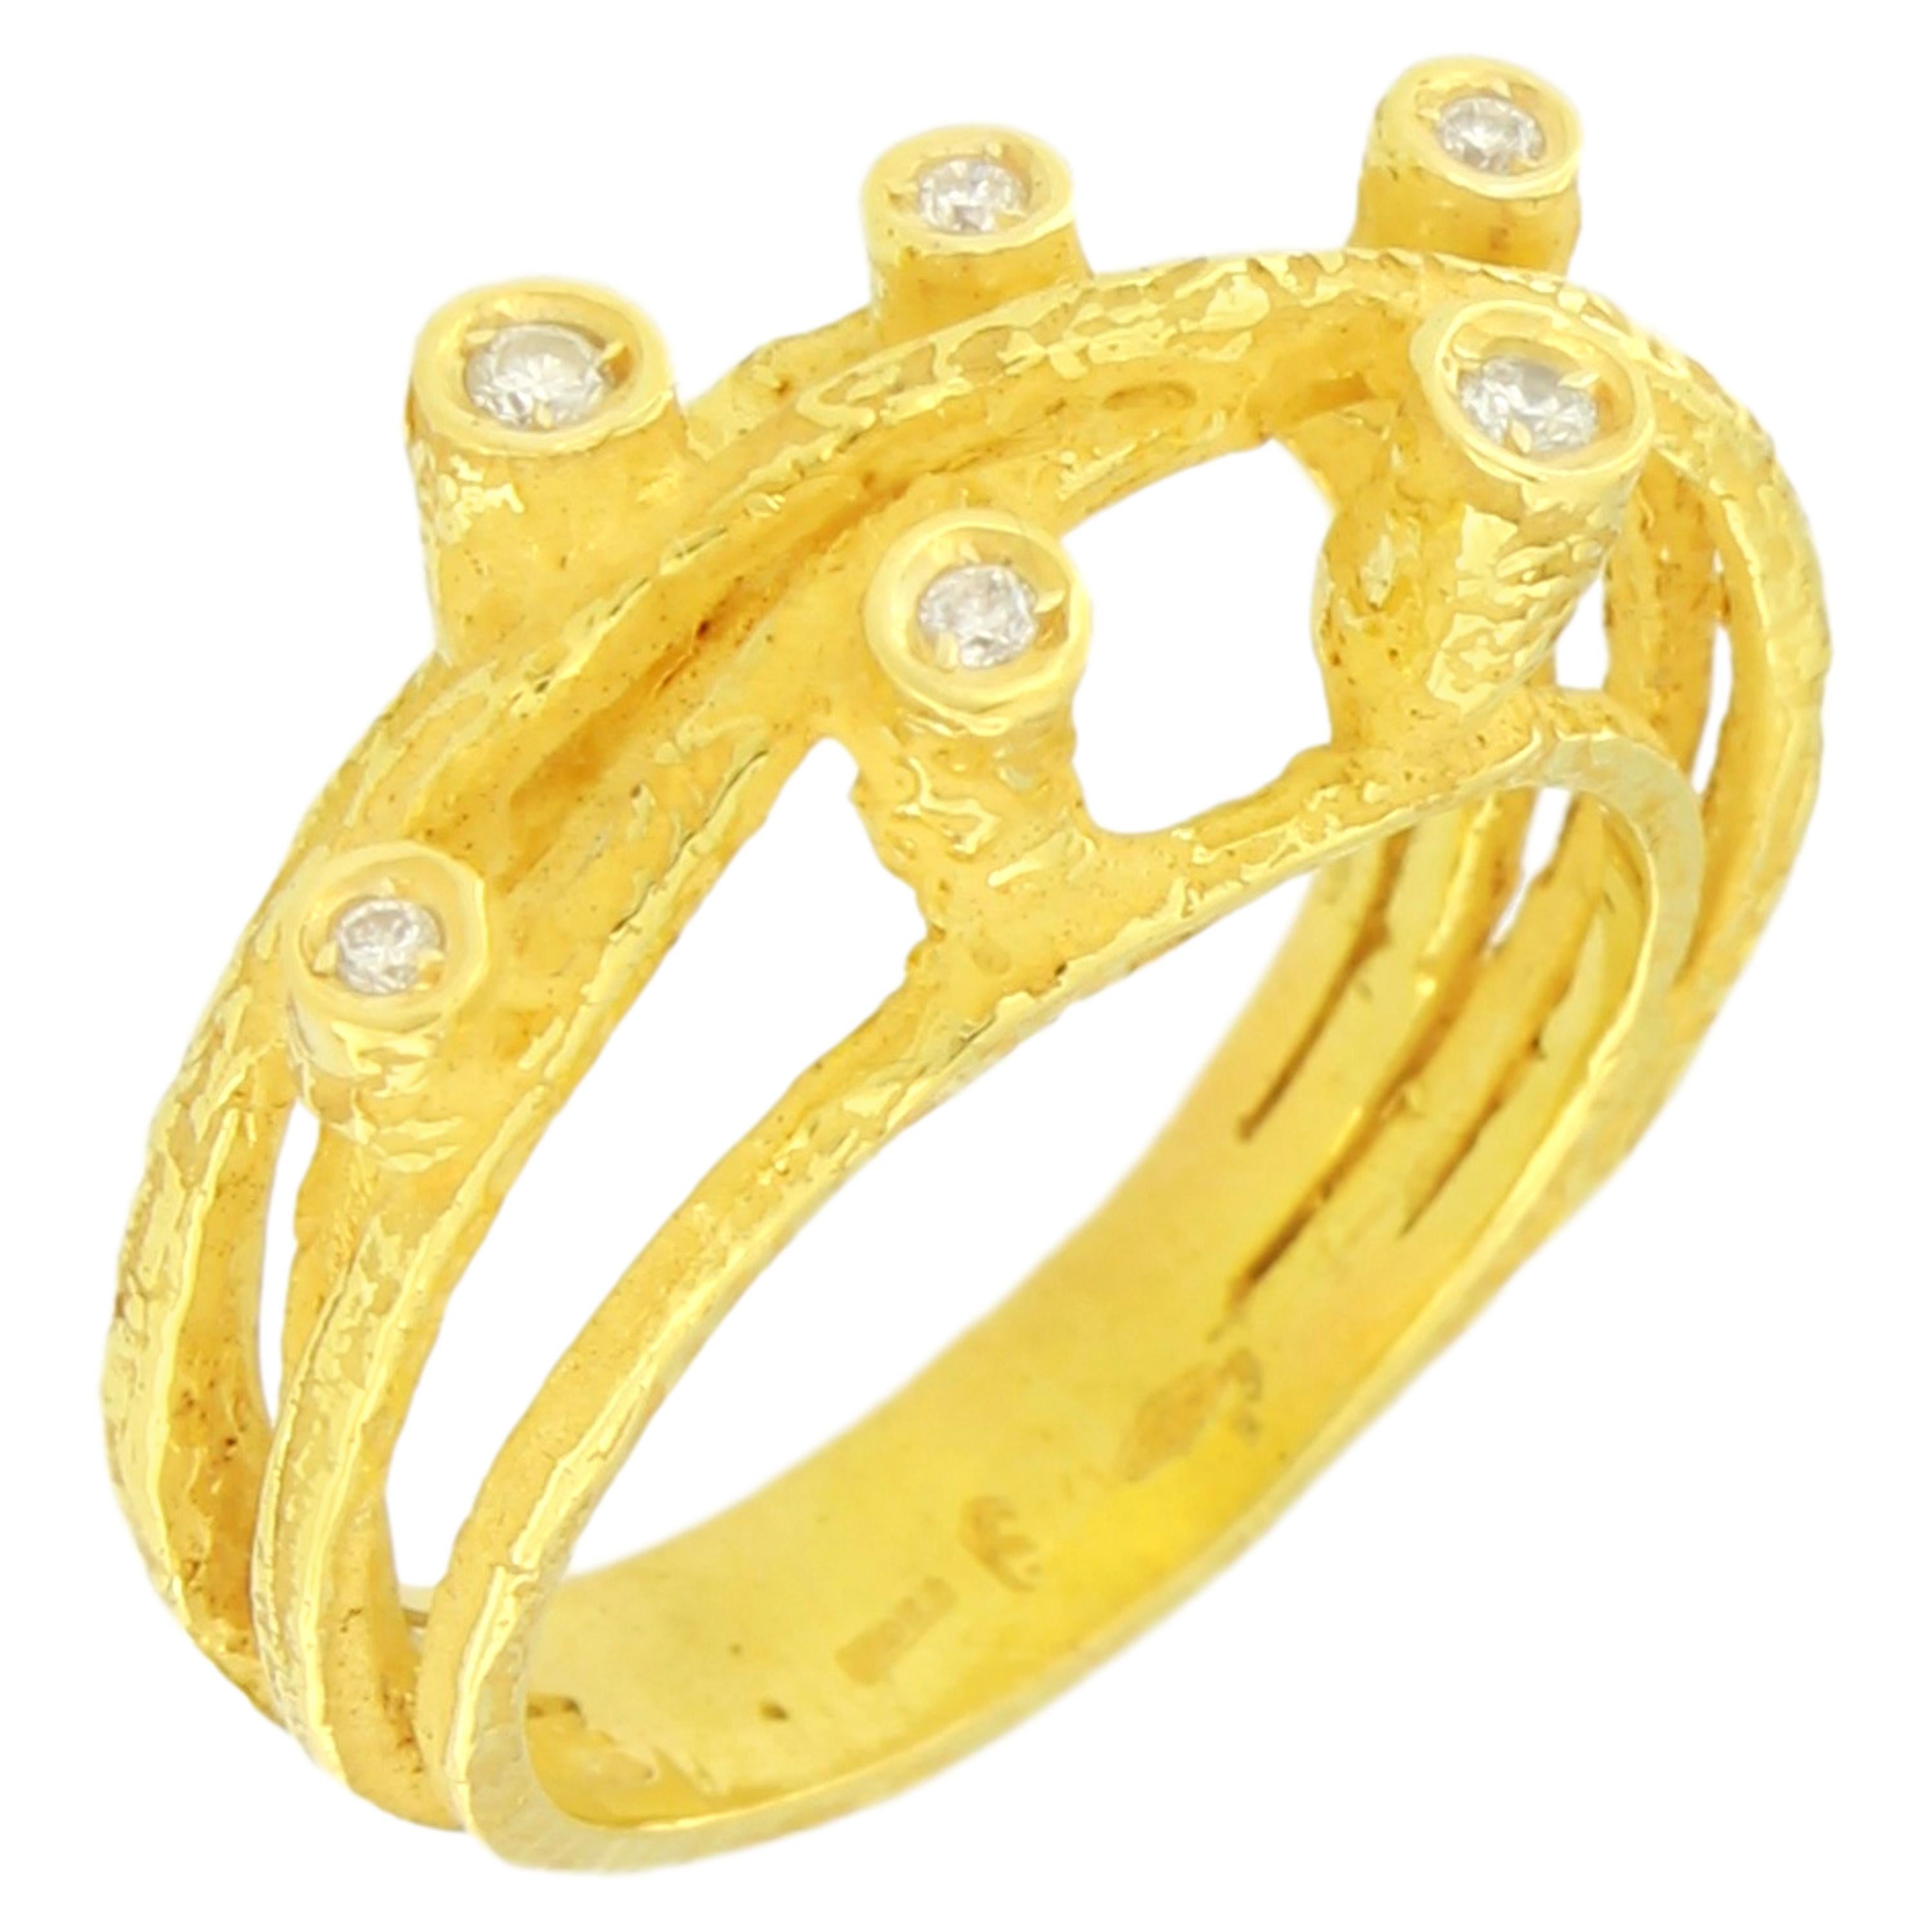 Hübscher, mit Diamanten besetzter Ring aus satiniertem Gelbgold aus Sacchis 